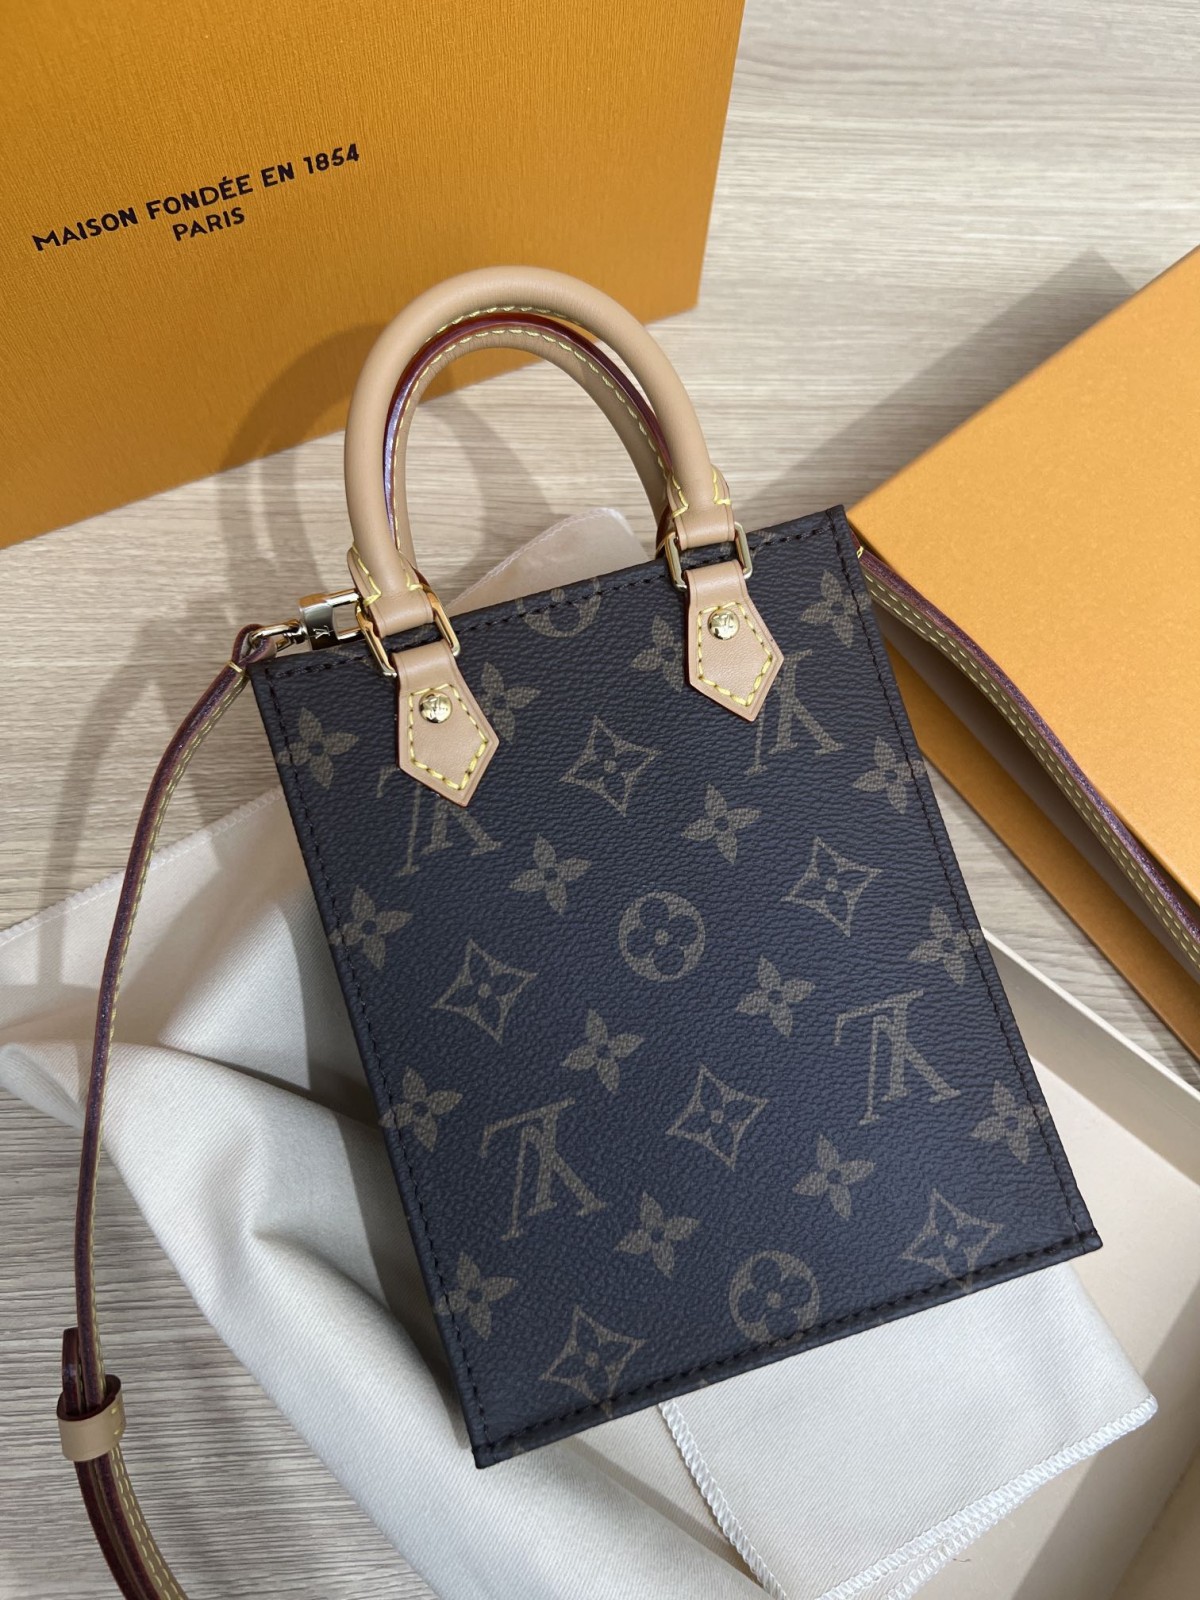 How good quality is a Shebag Louis Vuitton PETIT SAC PLAT bag（2023 udpated）-ఉత్తమ నాణ్యత నకిలీ లూయిస్ విట్టన్ బ్యాగ్ ఆన్‌లైన్ స్టోర్, రెప్లికా డిజైనర్ బ్యాగ్ రు